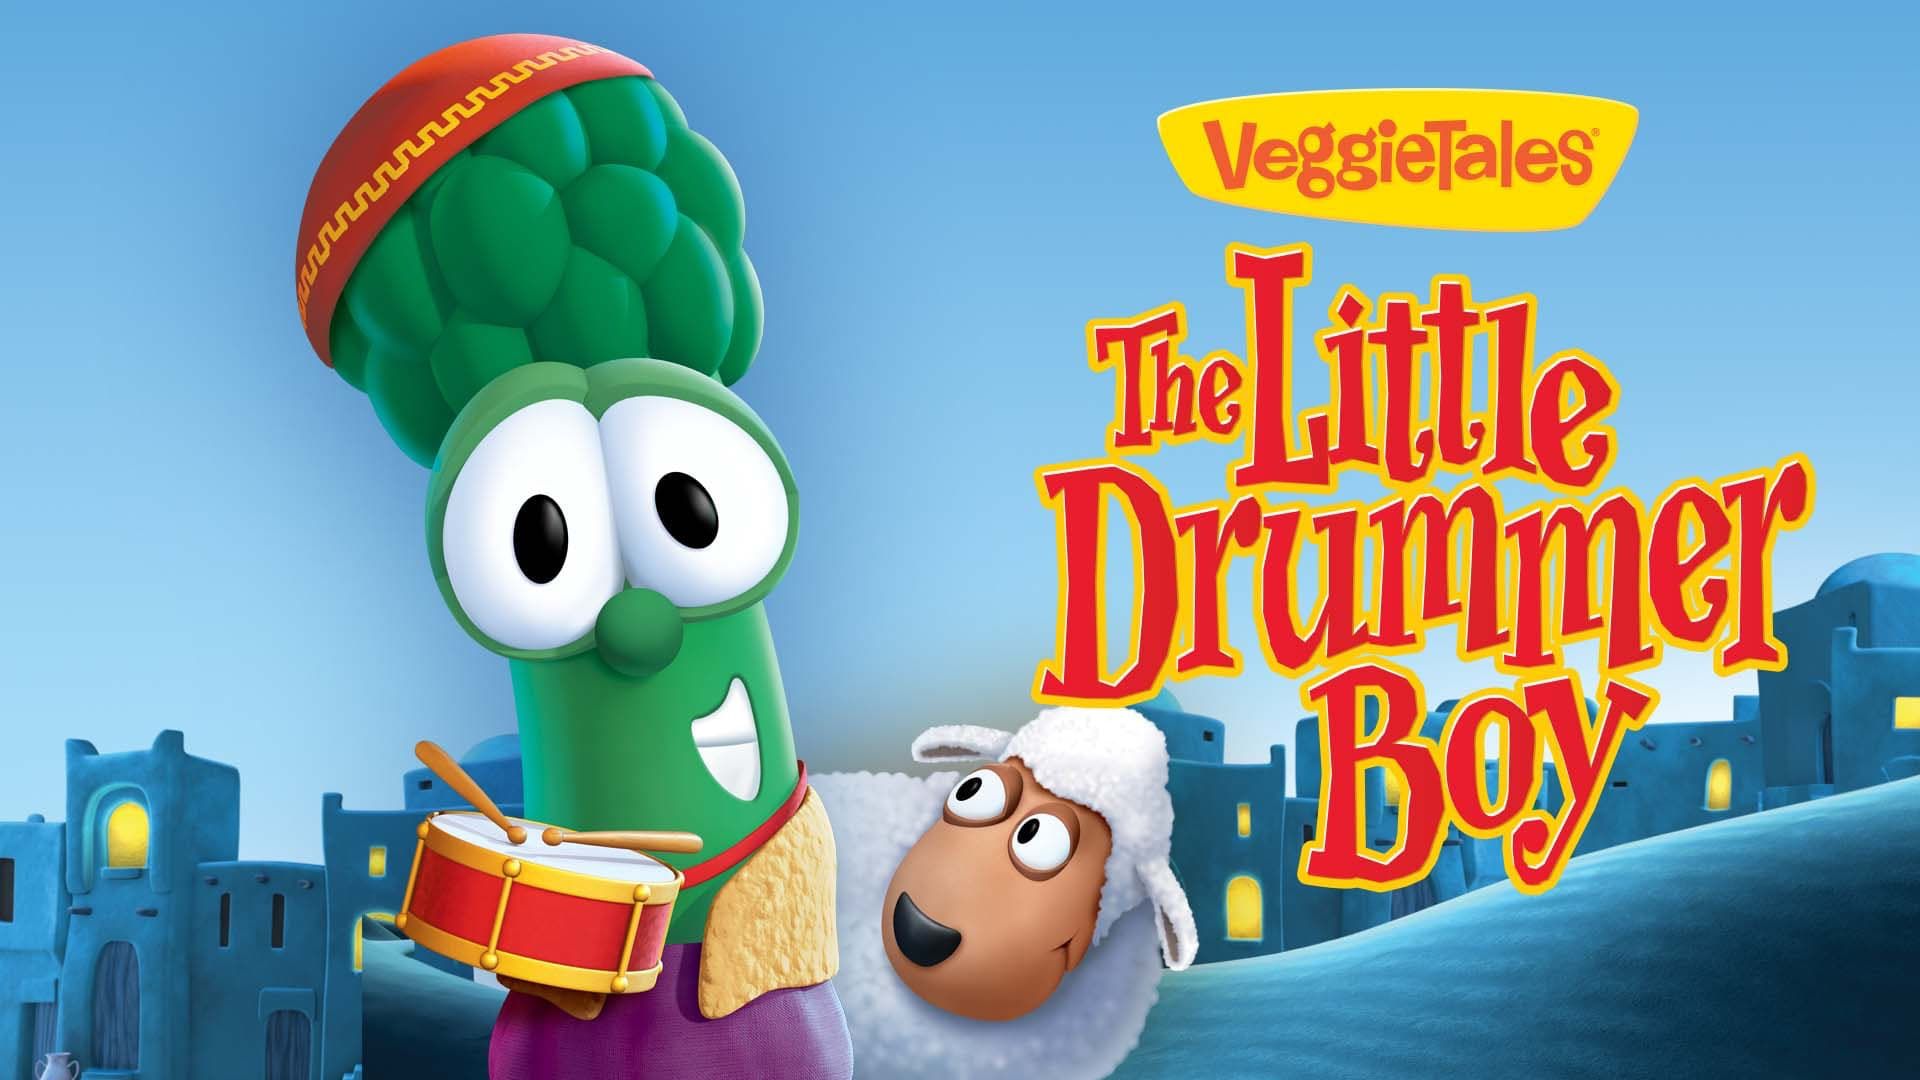 VeggieTales: The Little Drummer Boy background